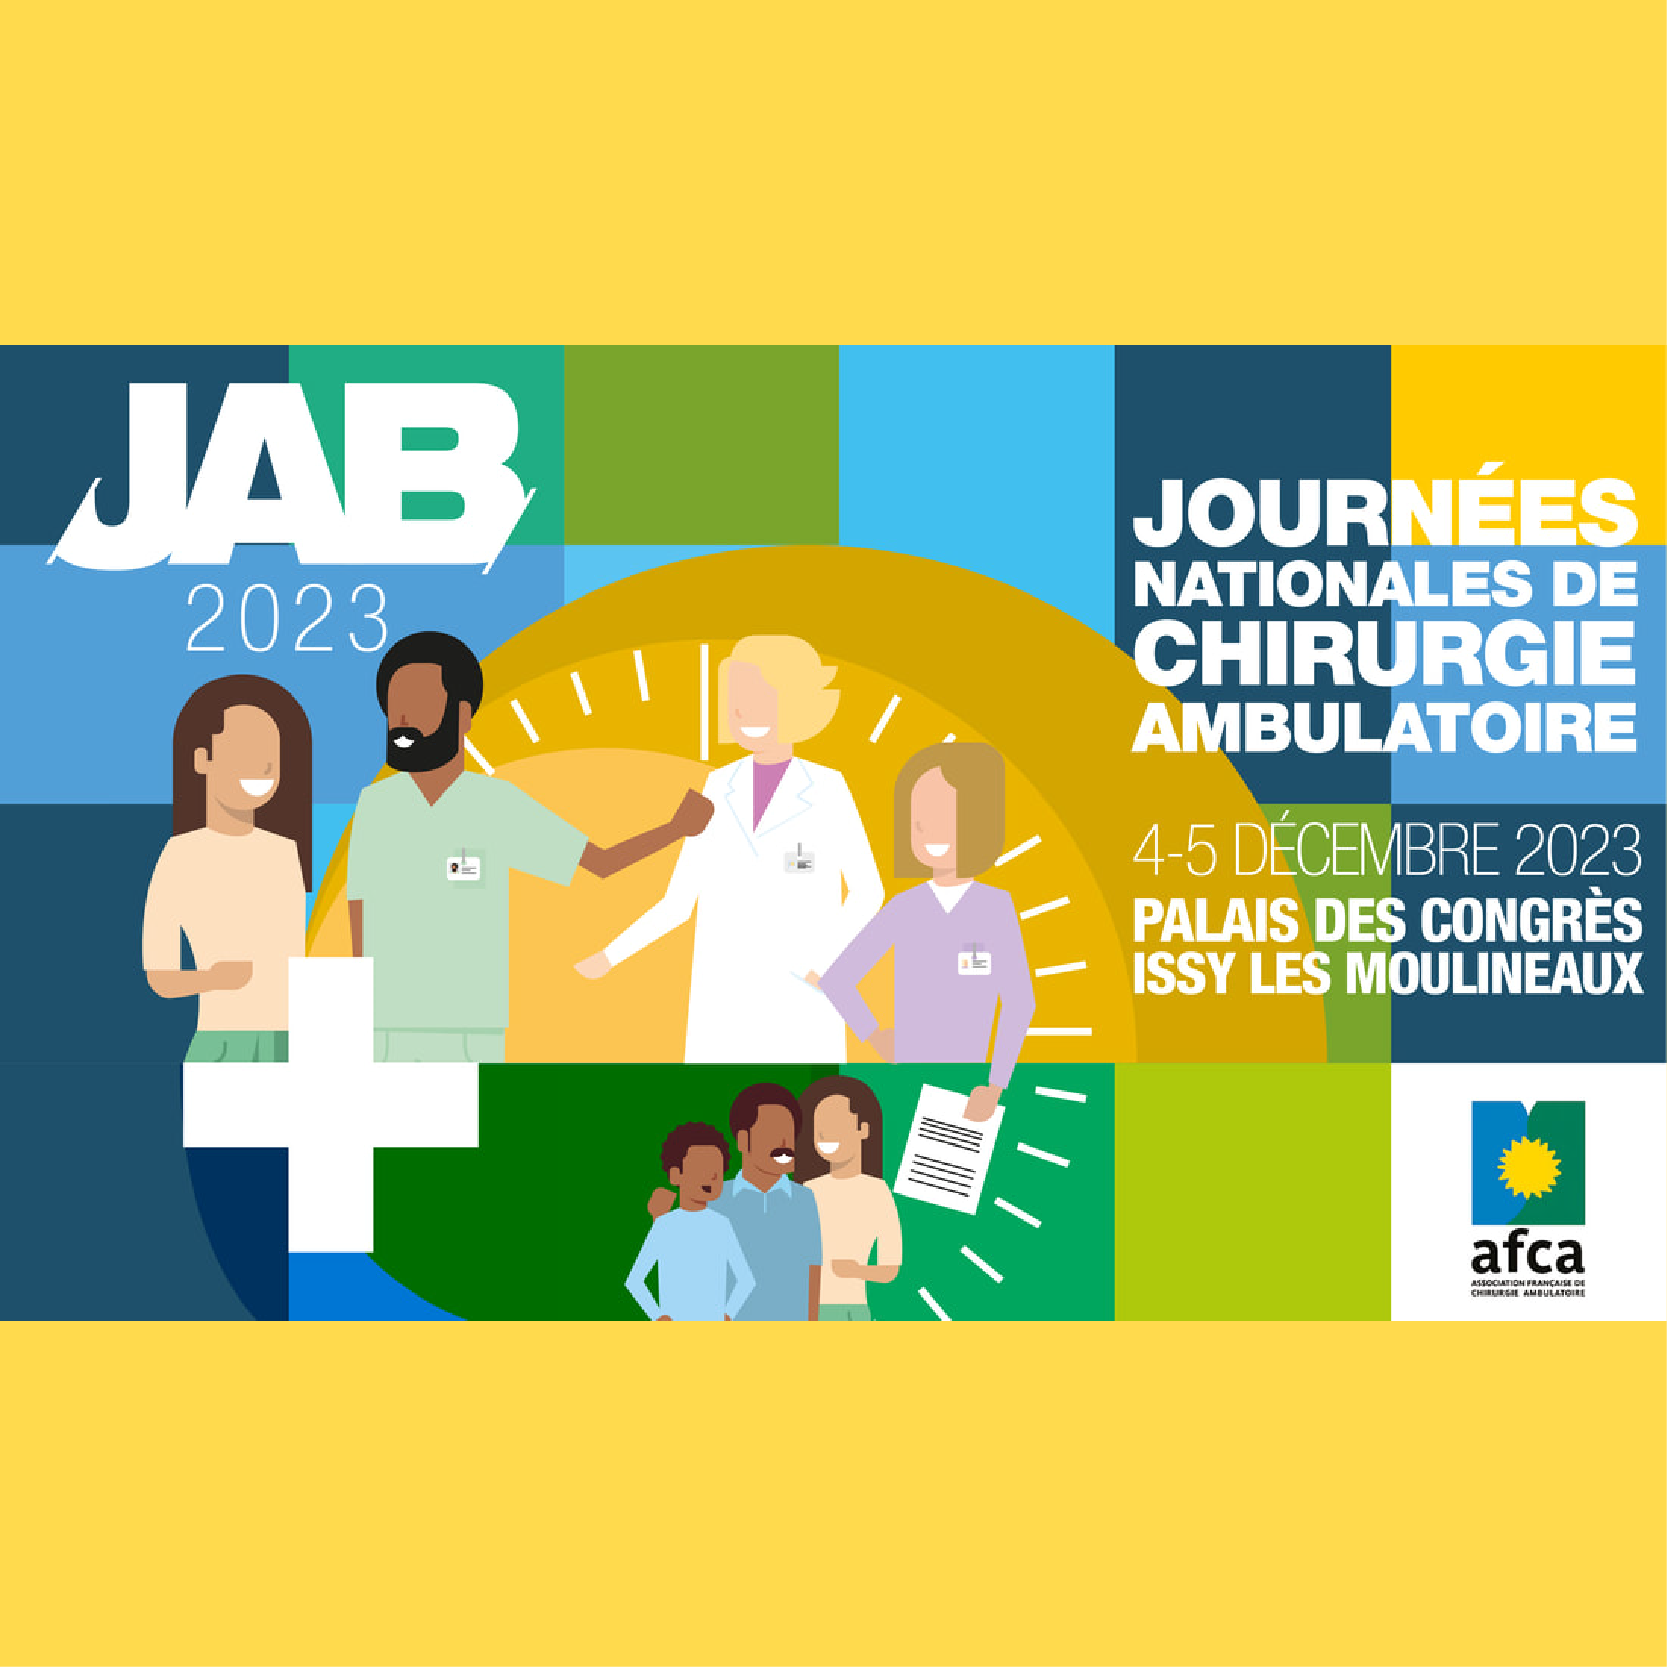 Journées Nationales de Chirurgie Ambulatoire - JAB 2023